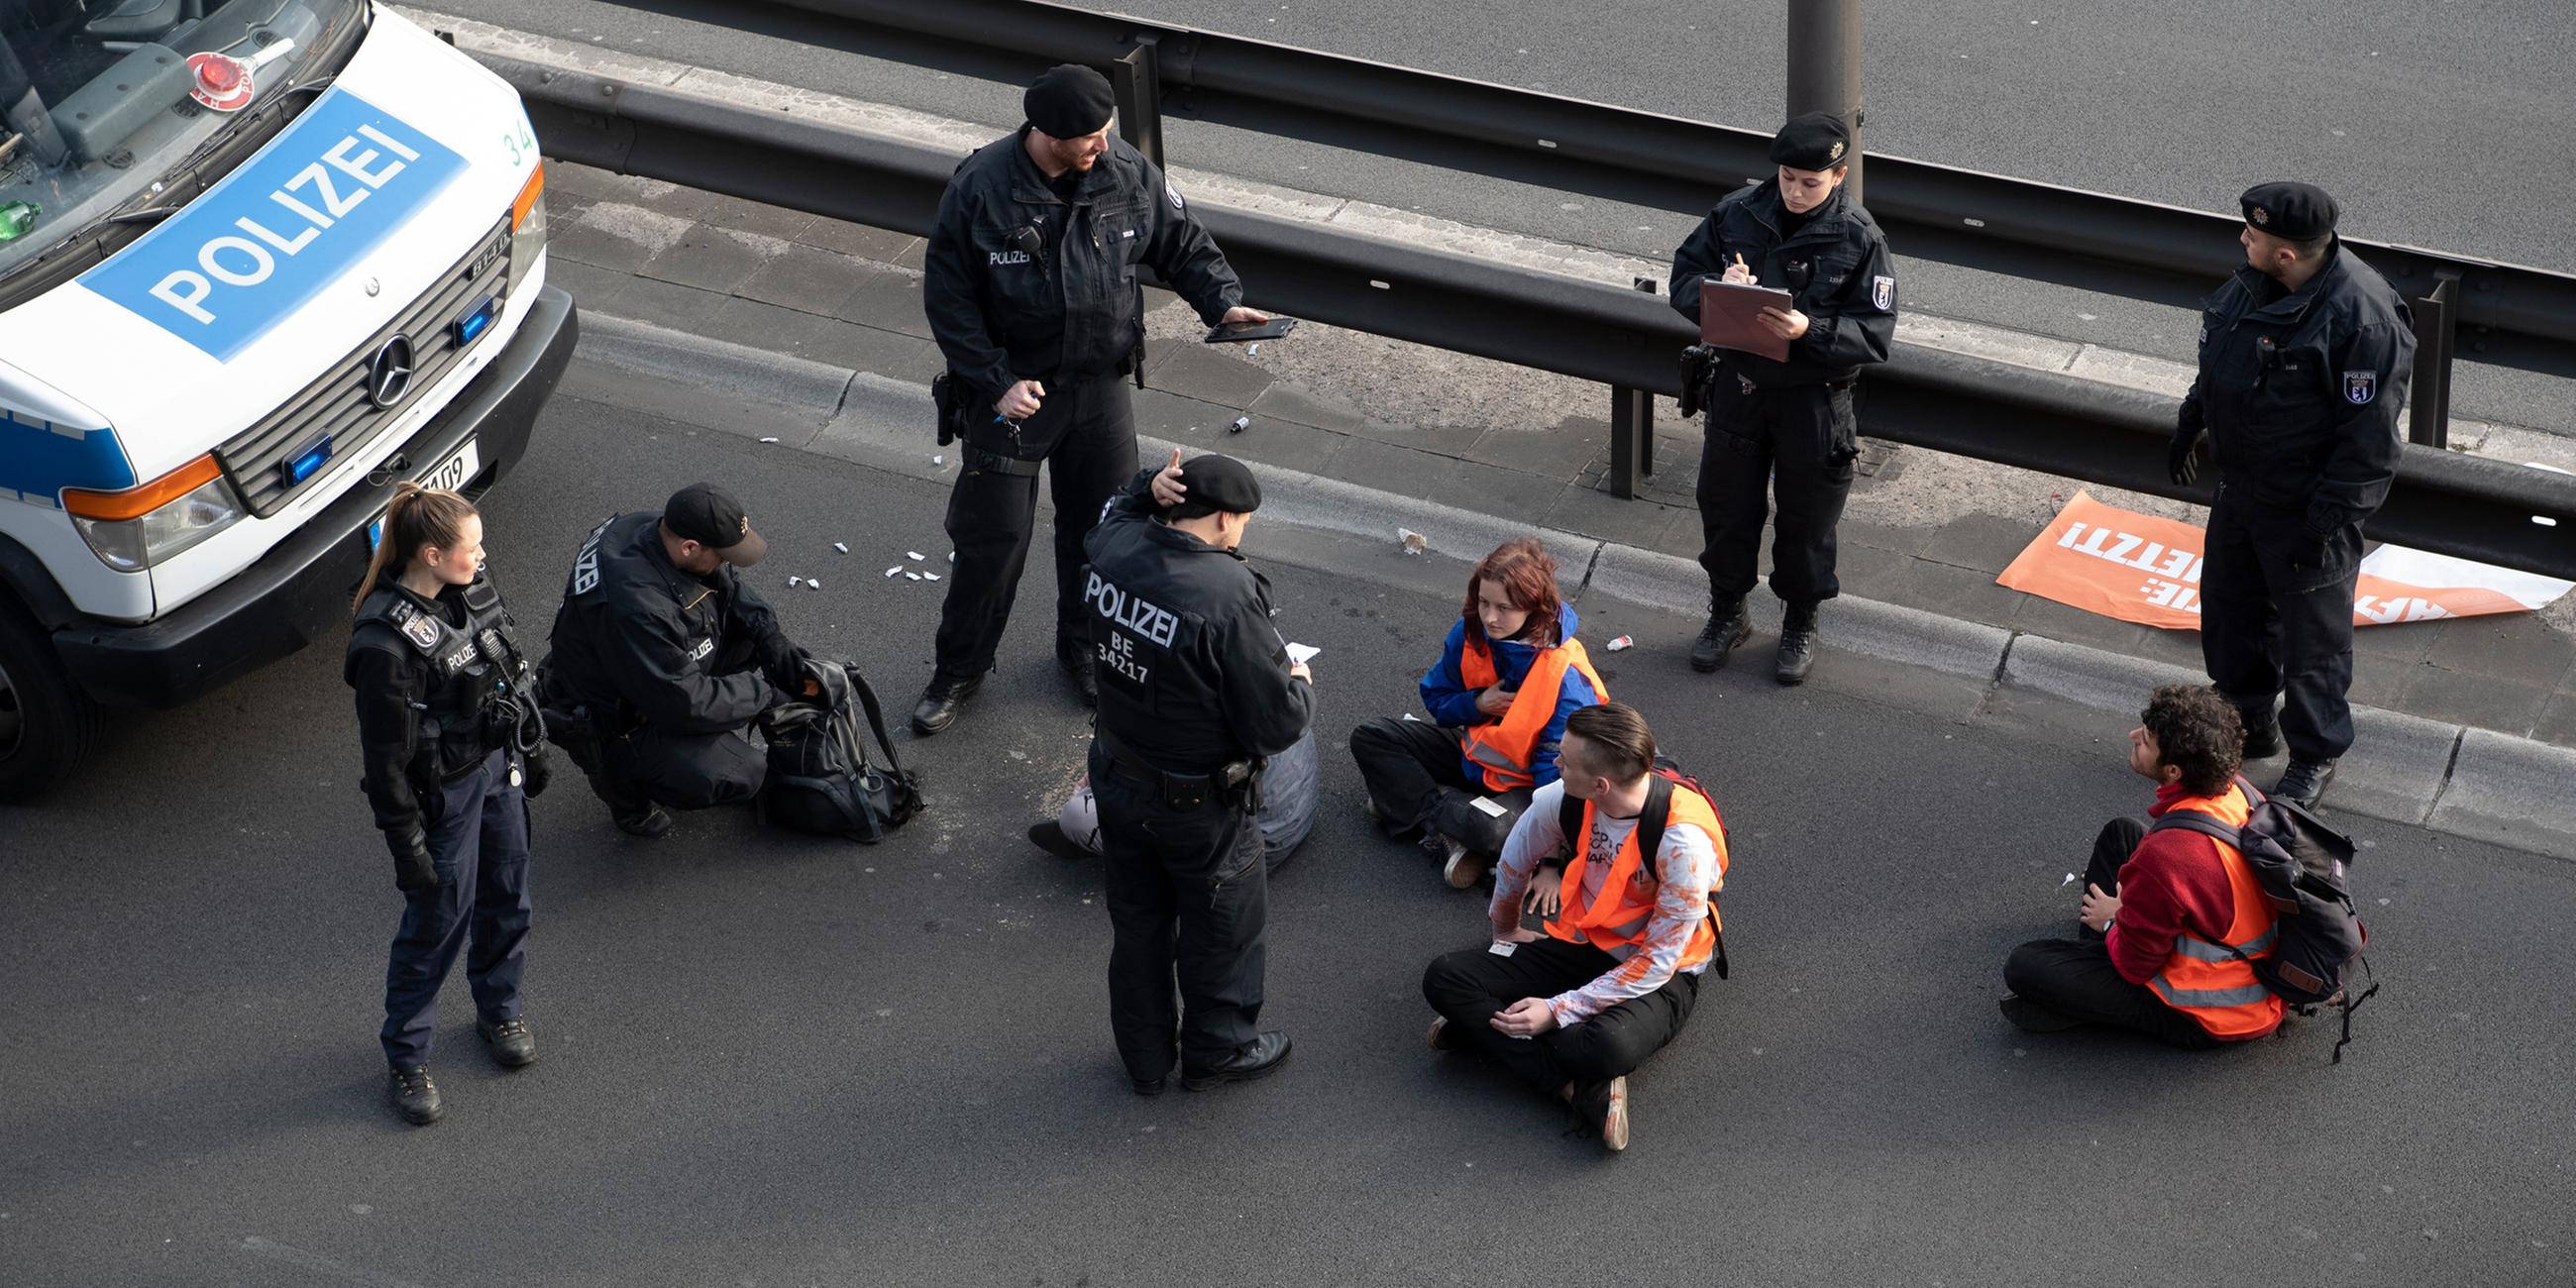 Aktivisten der "Letzten Generation" blockieren Stadtautobahn in Berlin - Polizeibeamte stehen bei der Gruppe